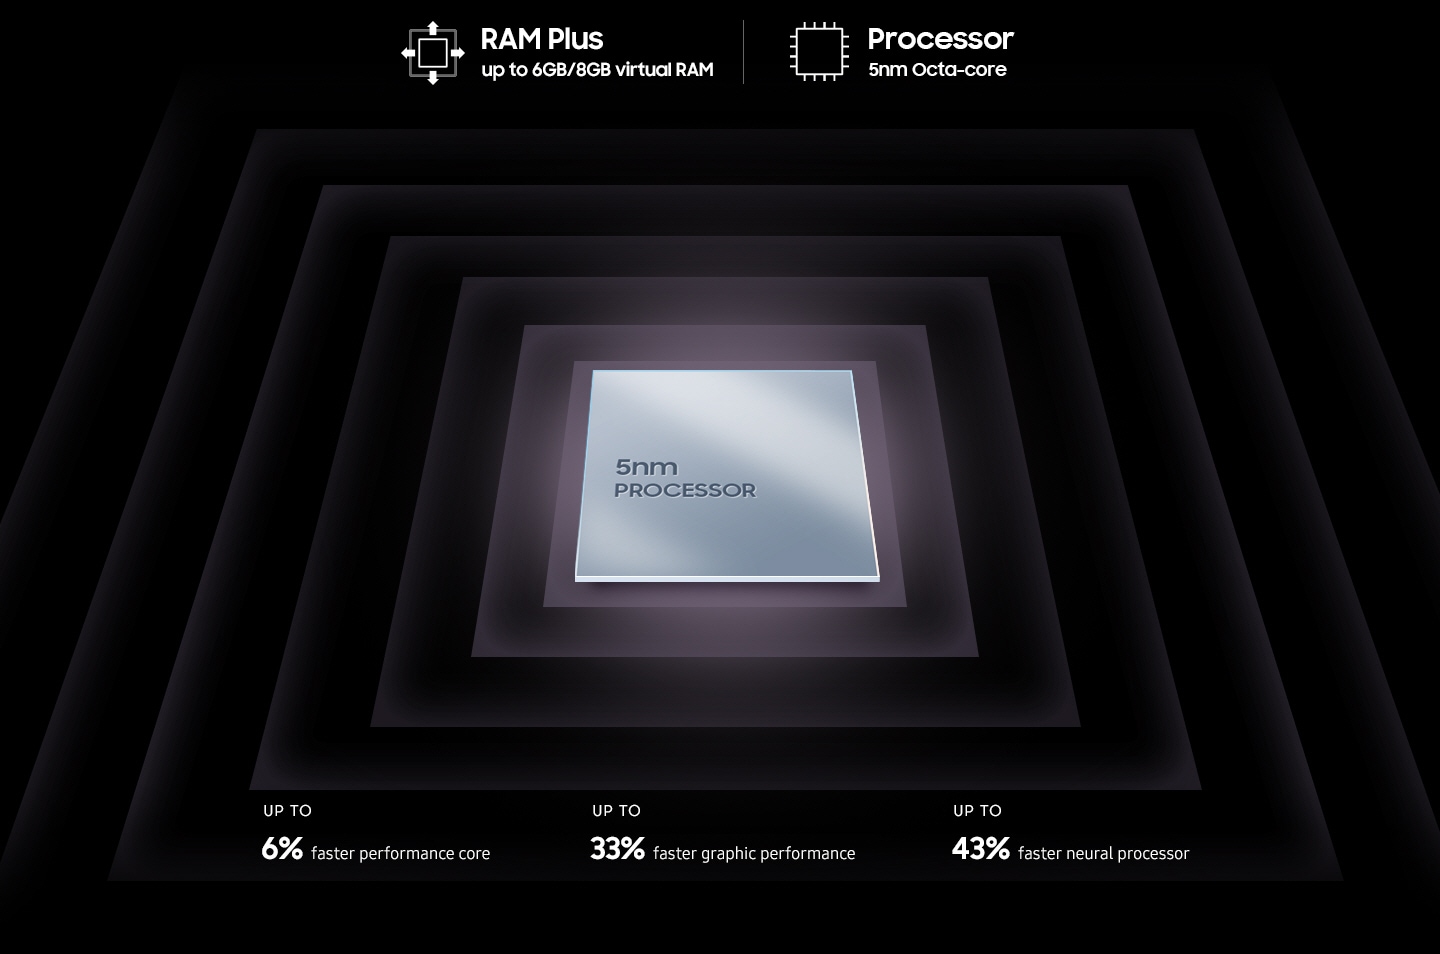 Prikazan je metalni četvrtasti čip procesora s tekstom na površini: procesor 5 nm. Oko čipa nalazi se tekst: RAM Plus do 6 GB/8 GB virtualnog RAM-a, osmojezgreni procesor 5 nm, do 6 % brže performanse jezgre, do 33 % brže grafičke performanse, do 43 % brži neuralni procesor. 